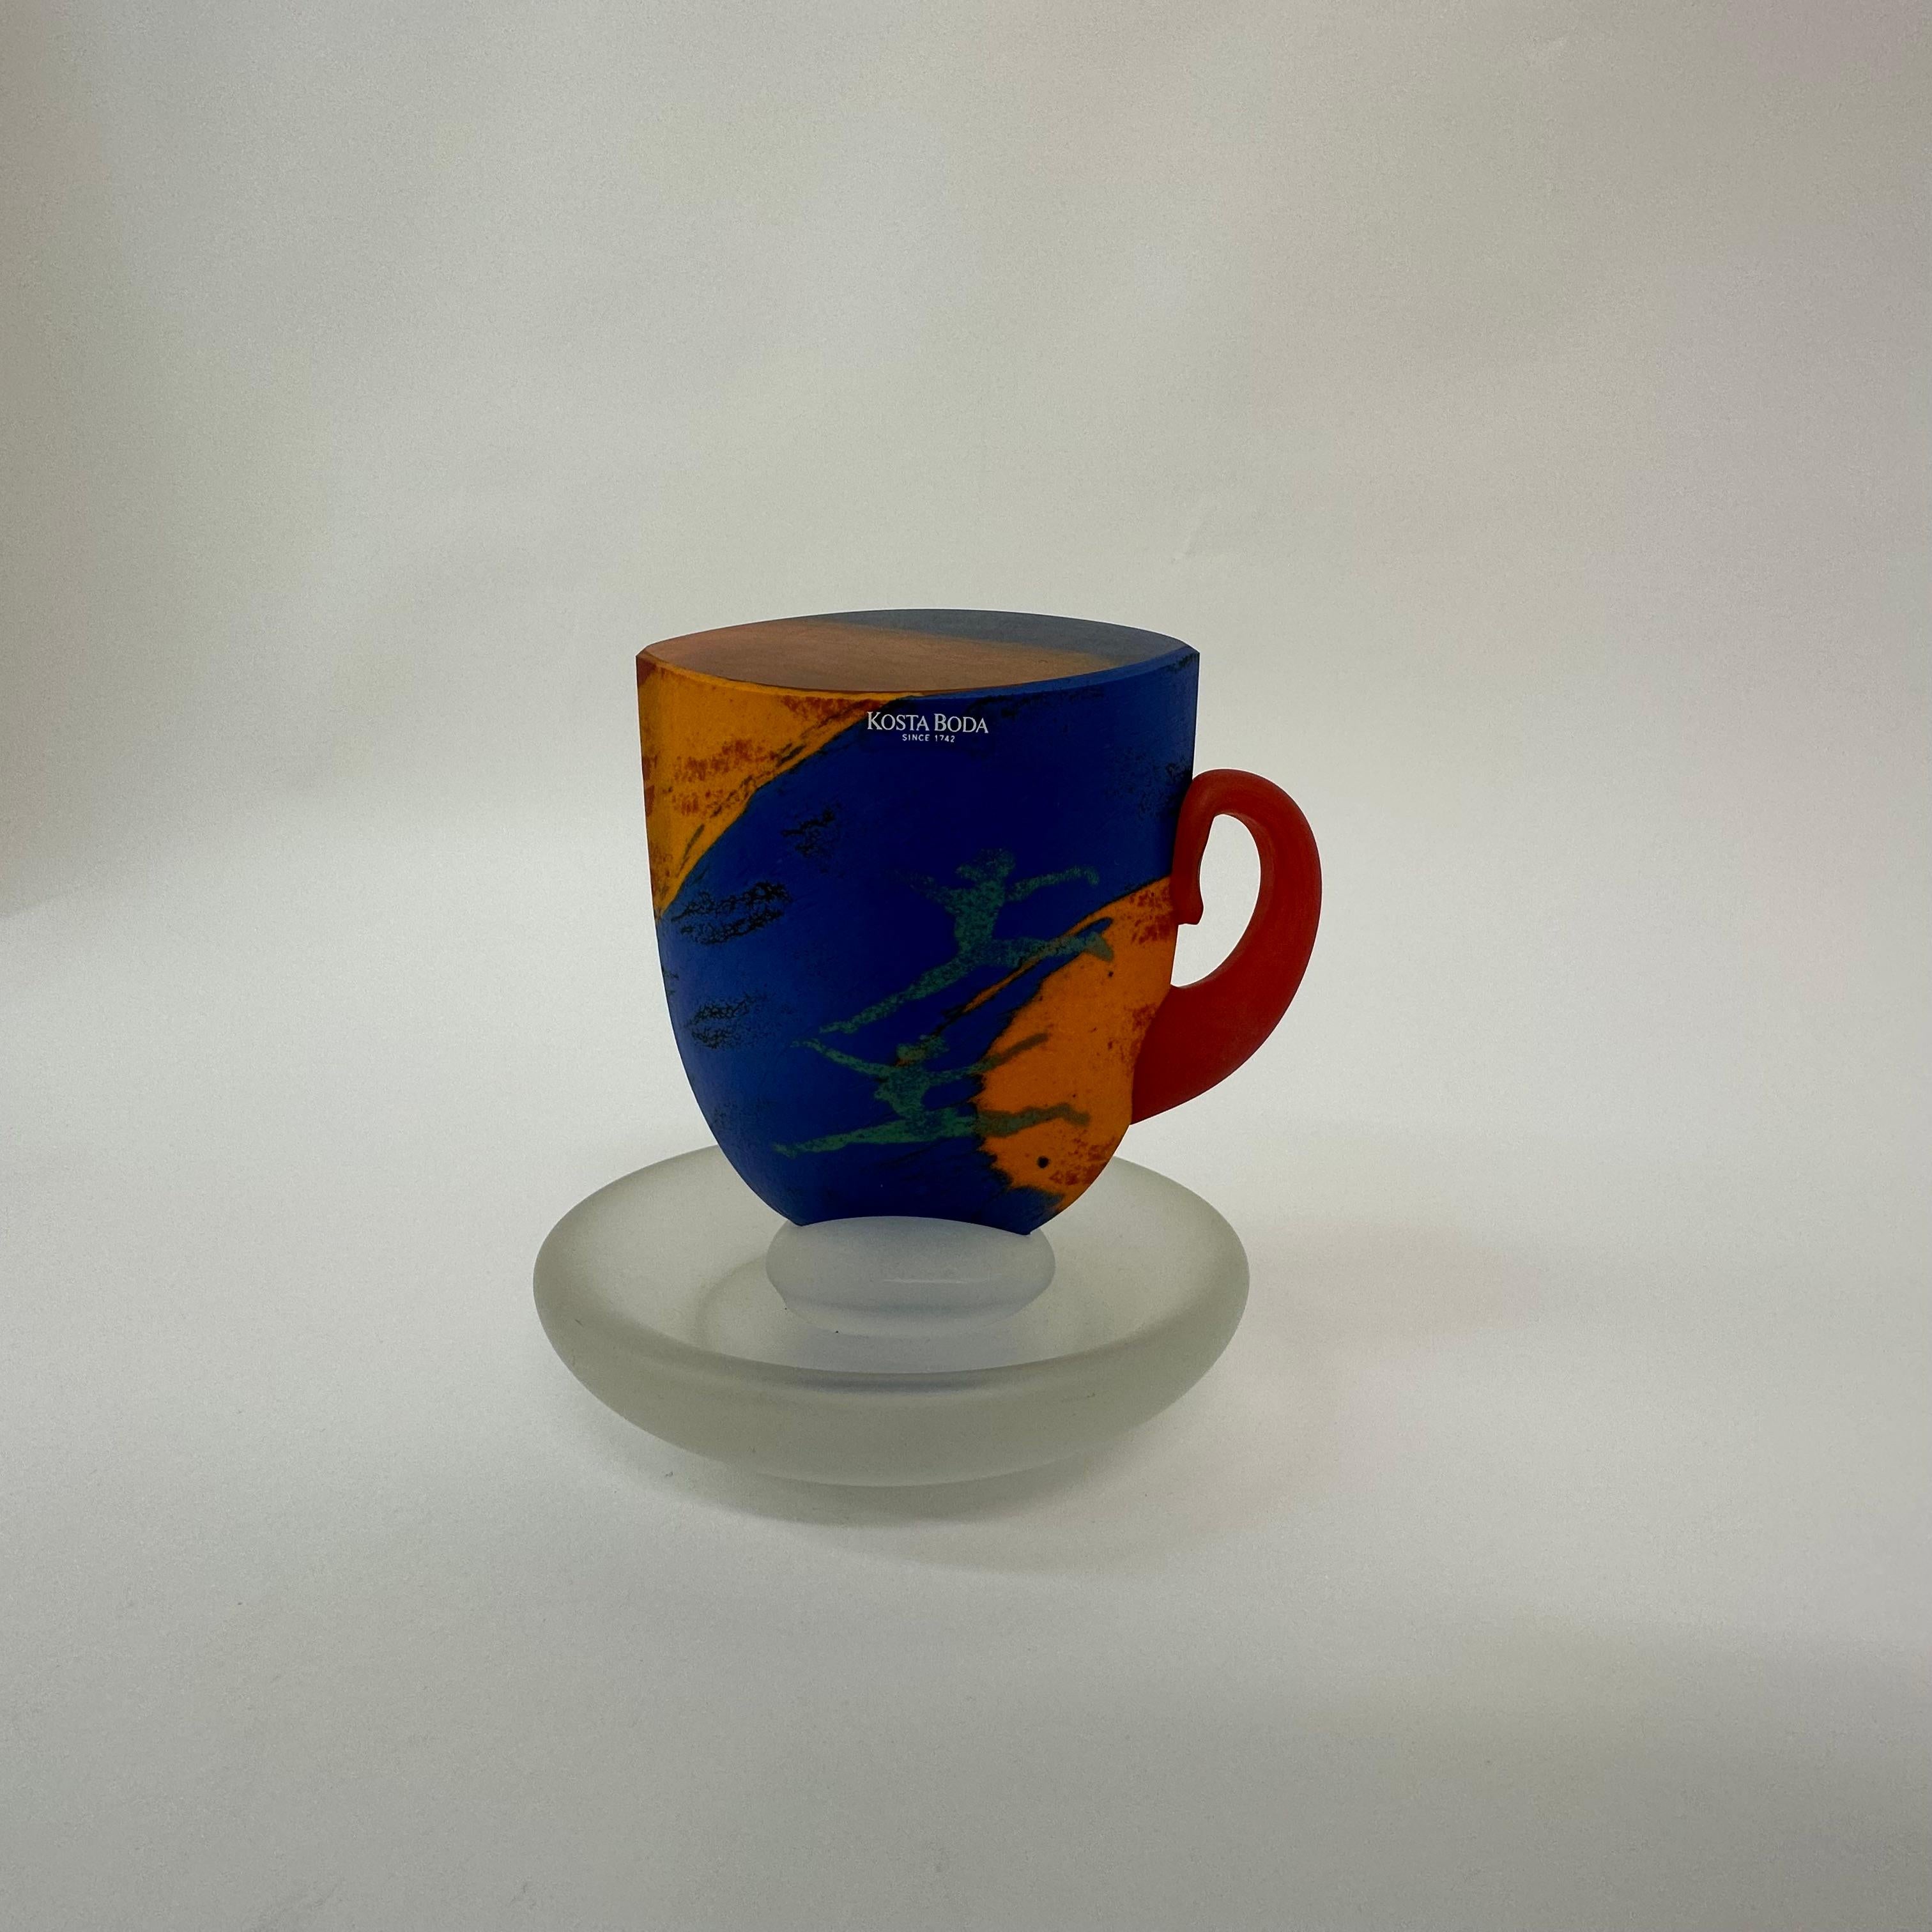 Rare Kjell Engman for Kosta Boda Sweden teacup , 1980’s
Dimensions: 15cm H, 14cmW, 12,5cm D
Condition: Good
Period:  1980’s
Origin: Sweden
Designer: Kjell Engman
Manufacturer: Kosta Boda